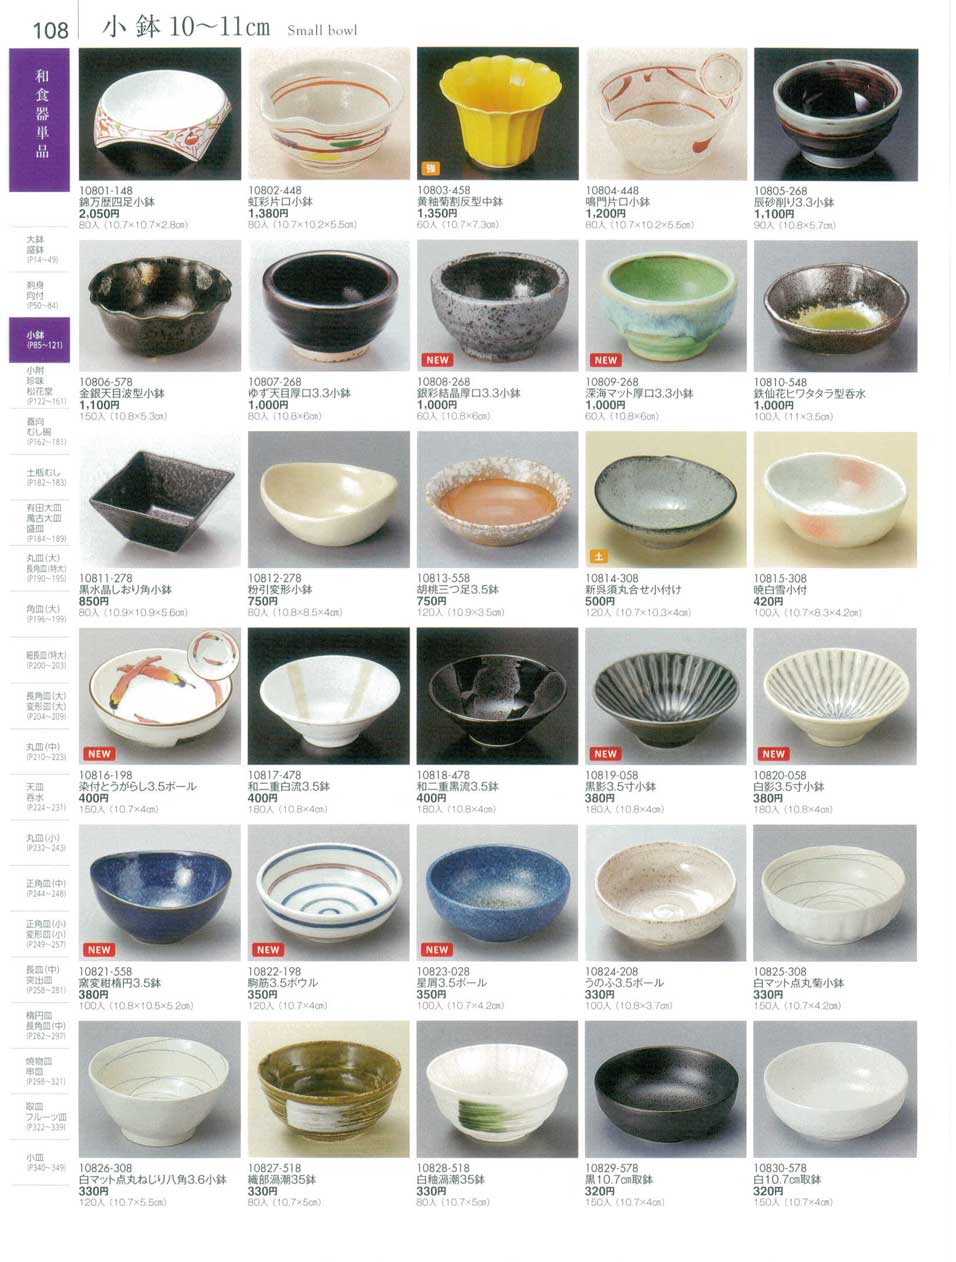 食器 小鉢１０から１１ｃｍSmall bowl 陶雅１８－108ページ